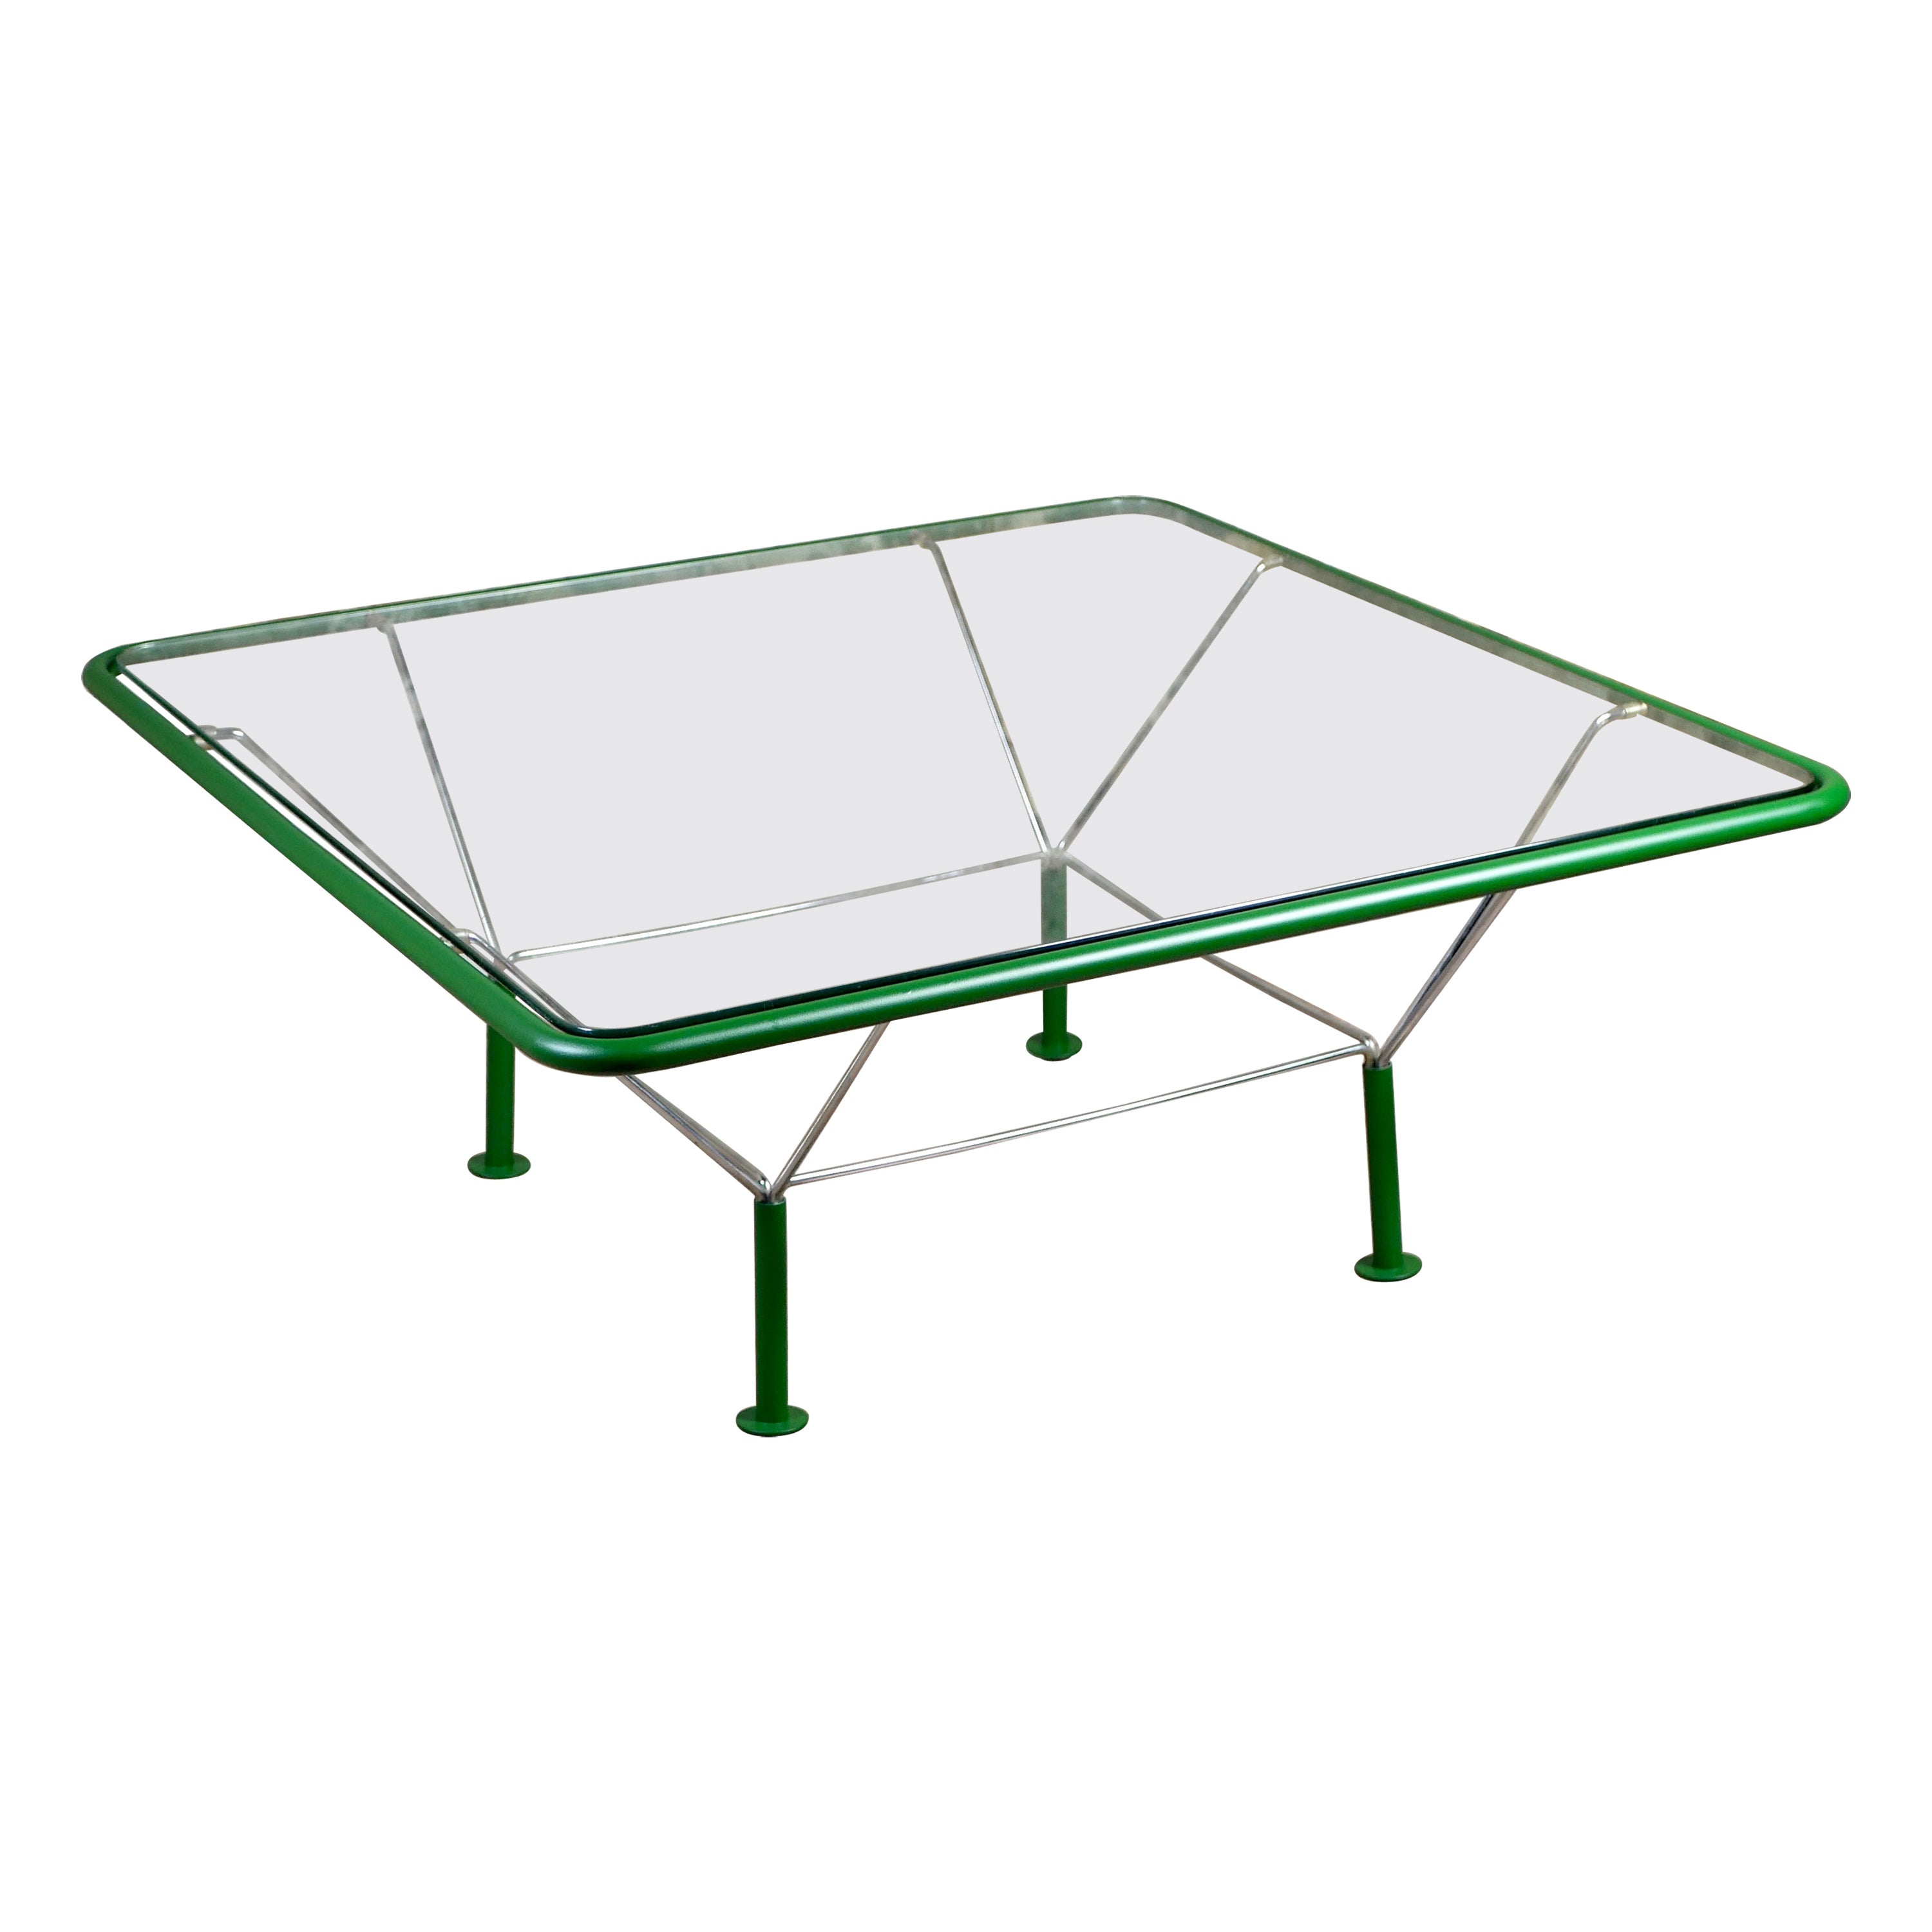 Grande table basse verte de Niels Bendtsen, fabriquée au Danemark dans les années 1970